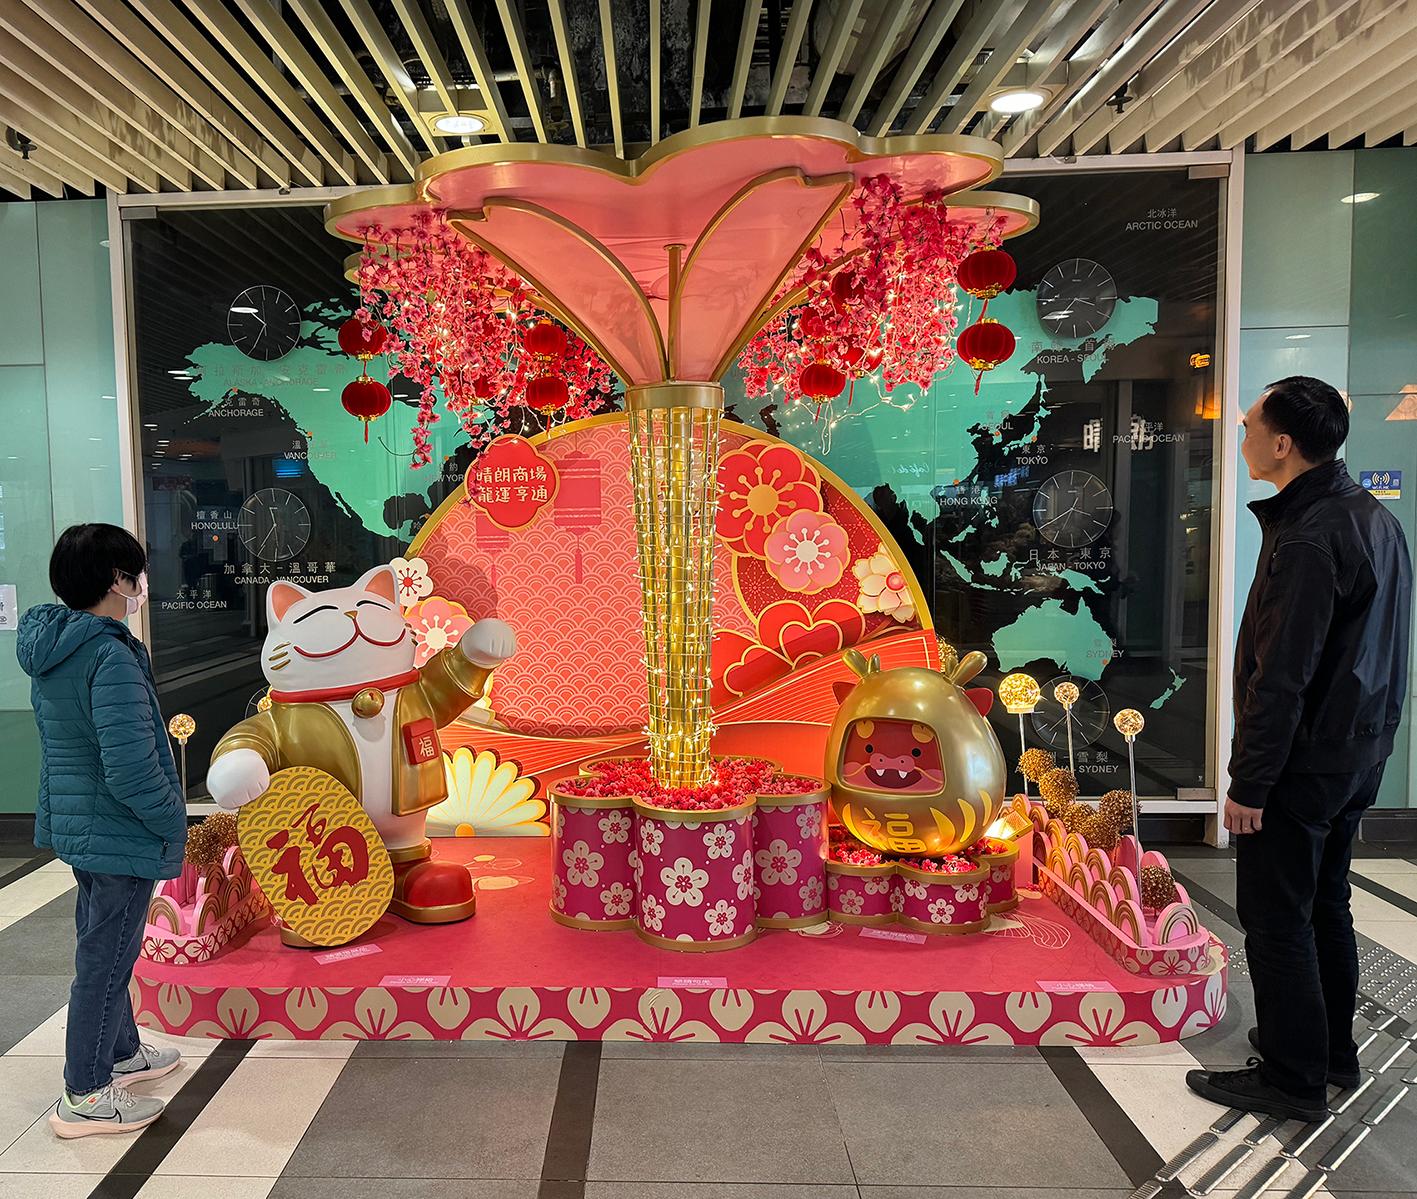 为庆祝农历新年将至，香港房屋委员会在辖下商场举办新春庆祝活动，与市民共度新岁及推动经济。图示启德晴朗商场的贺年装饰。